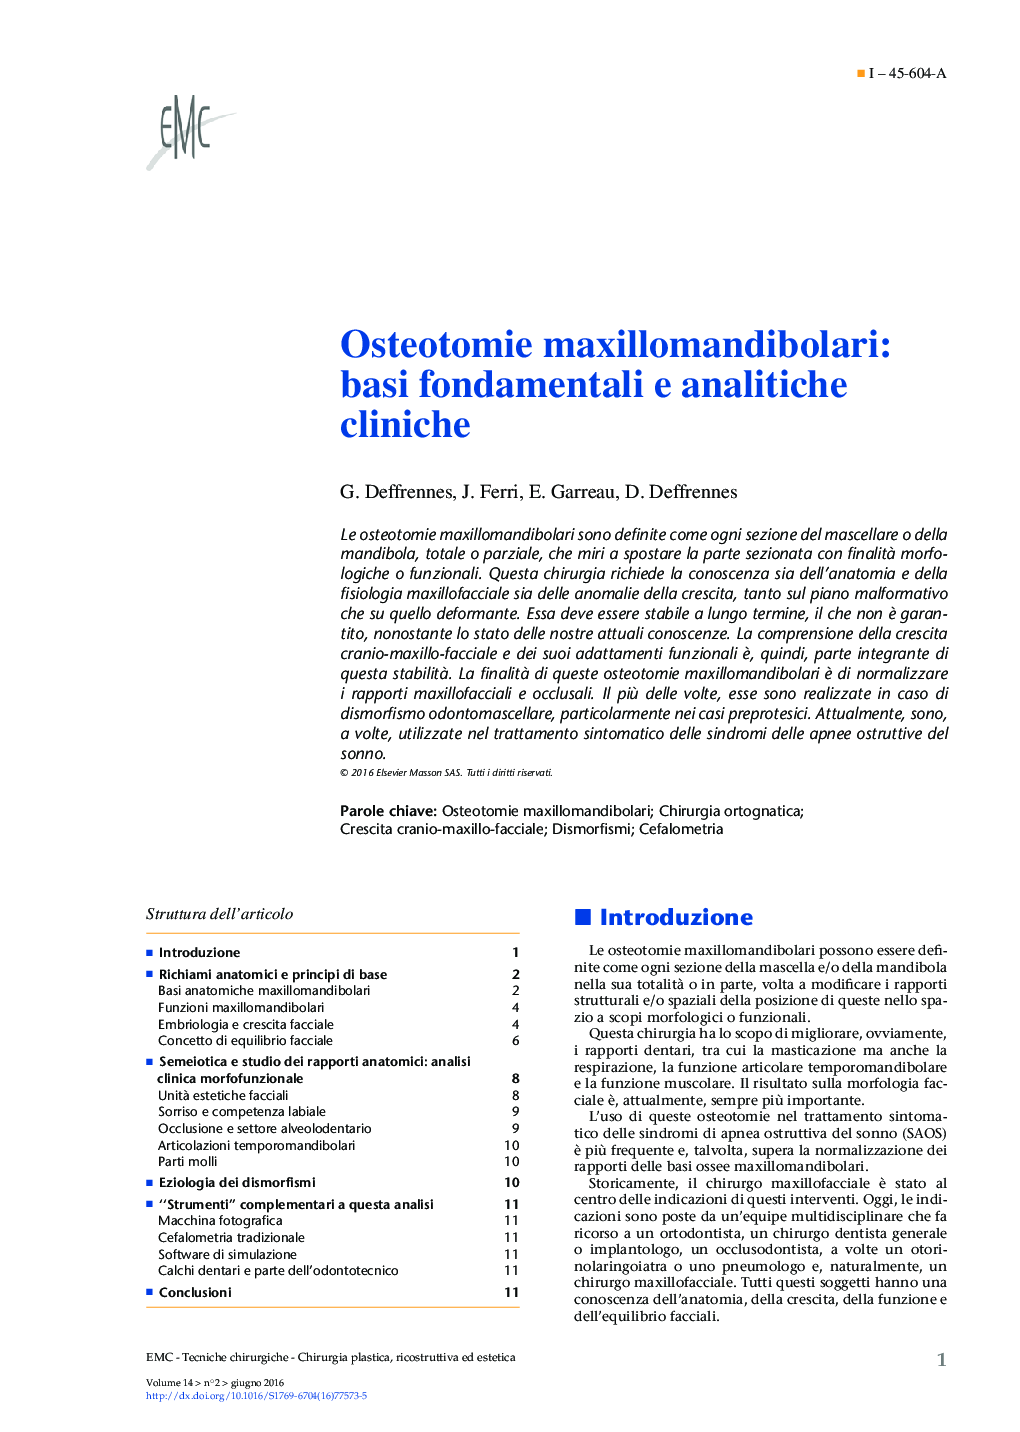 Osteotomie maxillomandibolari: basi fondamentali e analitiche cliniche